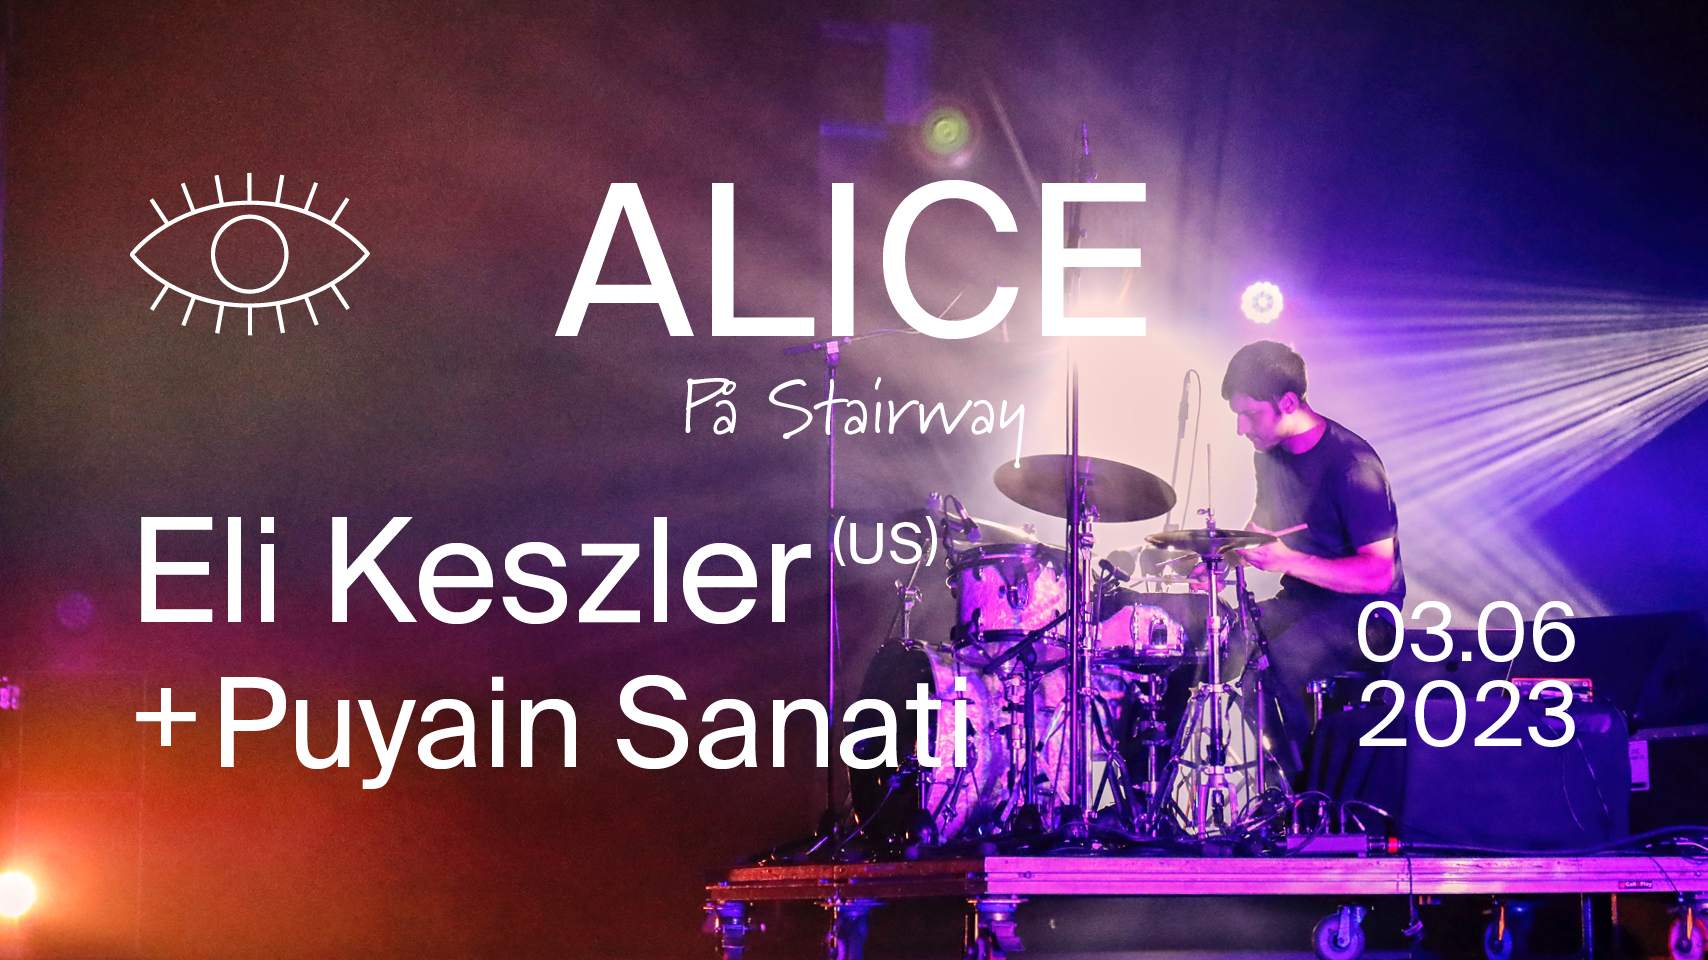 Eli Keszler (US) + Puyain Sanati at ALICE på Stairway - フライヤー表